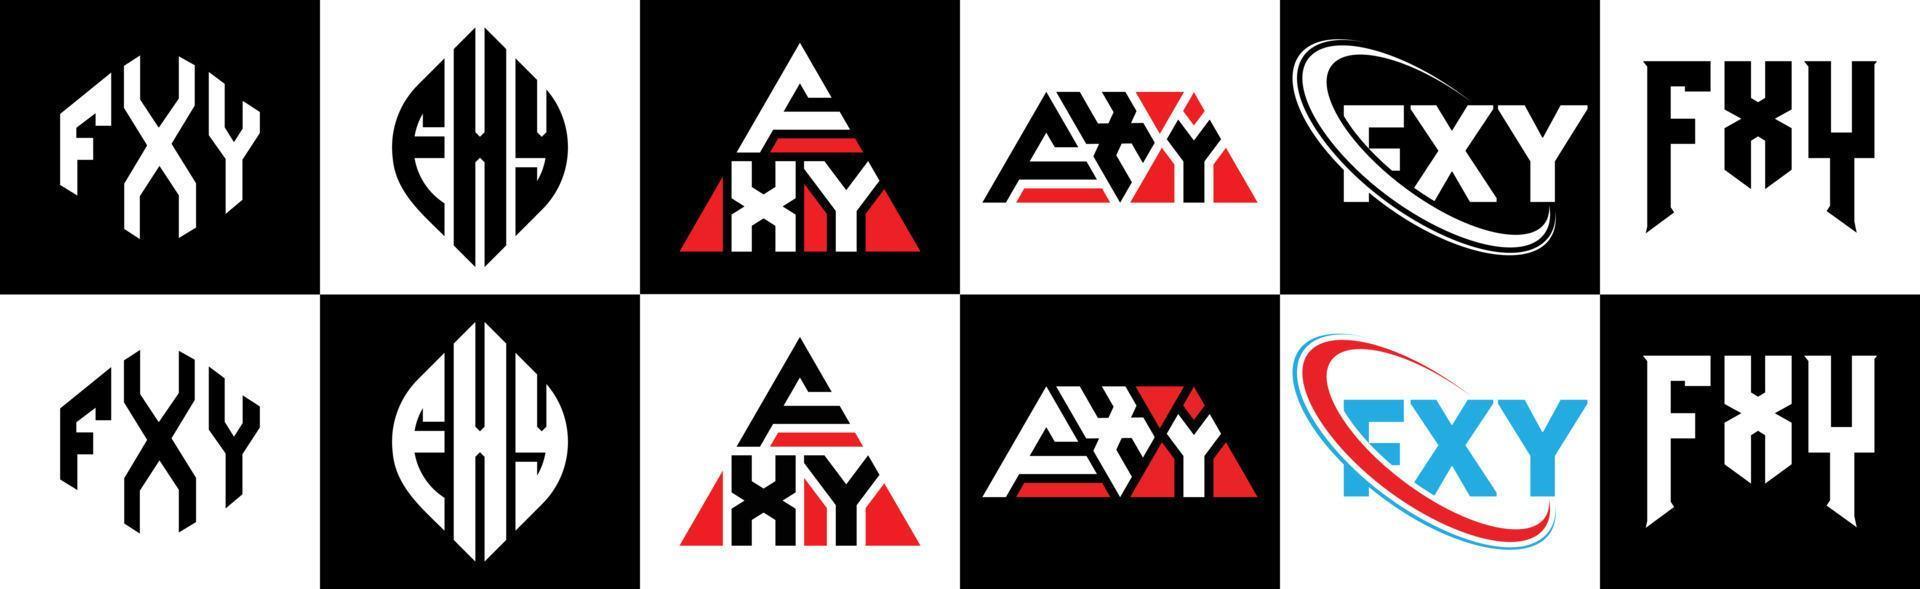 fxy brief logo ontwerp in zes stijl. fxy veelhoek, cirkel, driehoek, zeshoek, vlak en gemakkelijk stijl met zwart en wit kleur variatie brief logo reeks in een tekengebied. fxy minimalistische en klassiek logo vector